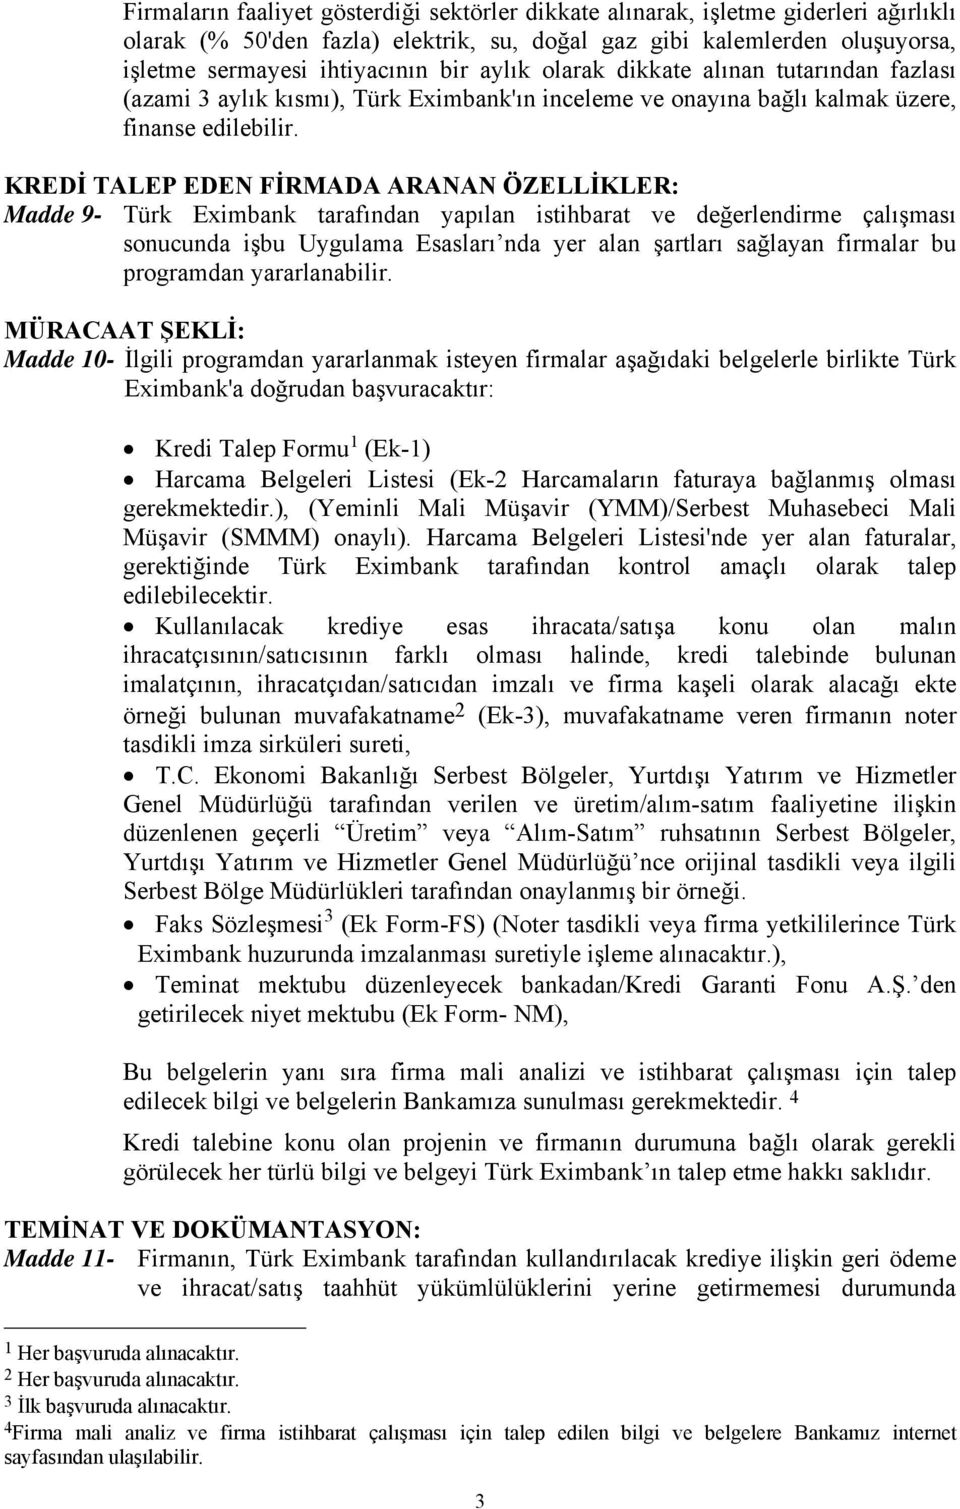 KREDİ TALEP EDEN FİRMADA ARANAN ÖZELLİKLER: Madde 9- Türk Eximbank tarafından yapılan istihbarat ve değerlendirme çalışması sonucunda işbu Uygulama Esasları nda yer alan şartları sağlayan firmalar bu